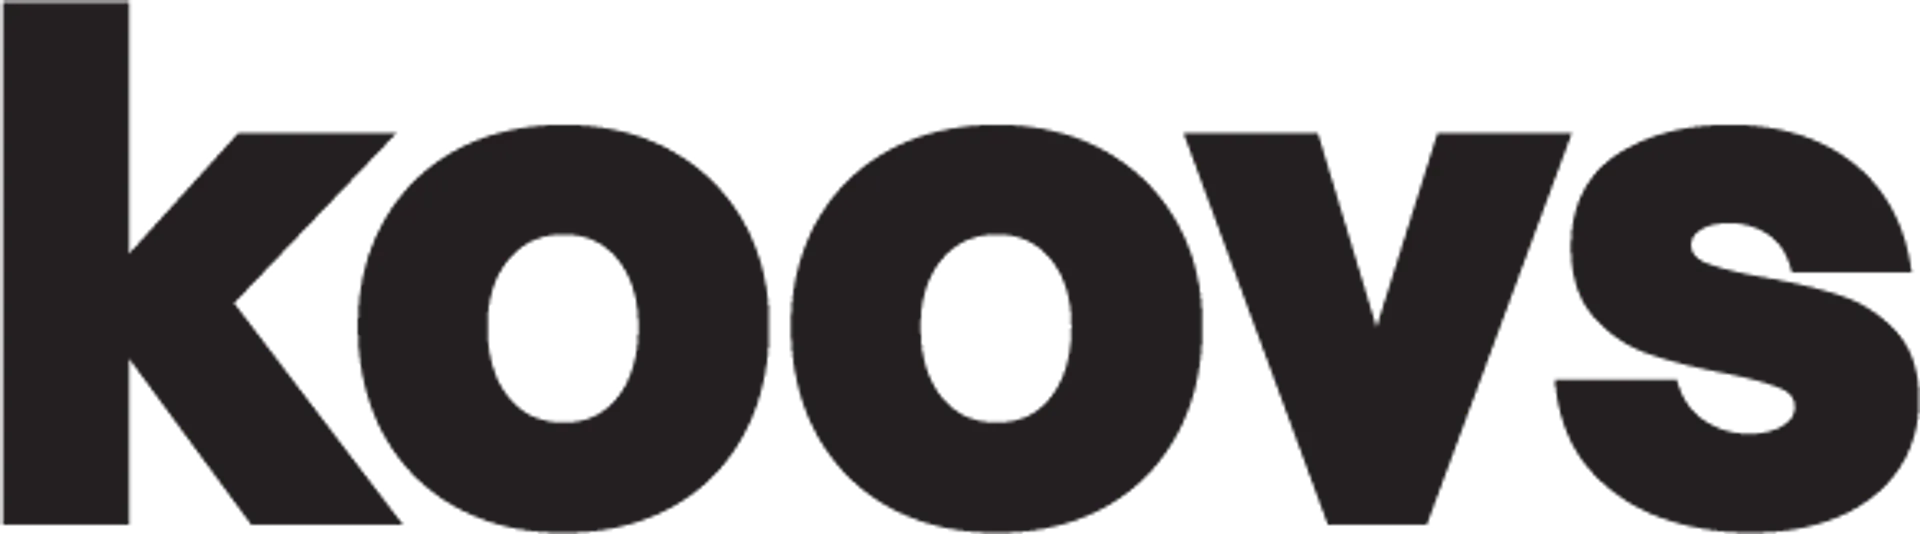 KOOVS logo. Current catalogue